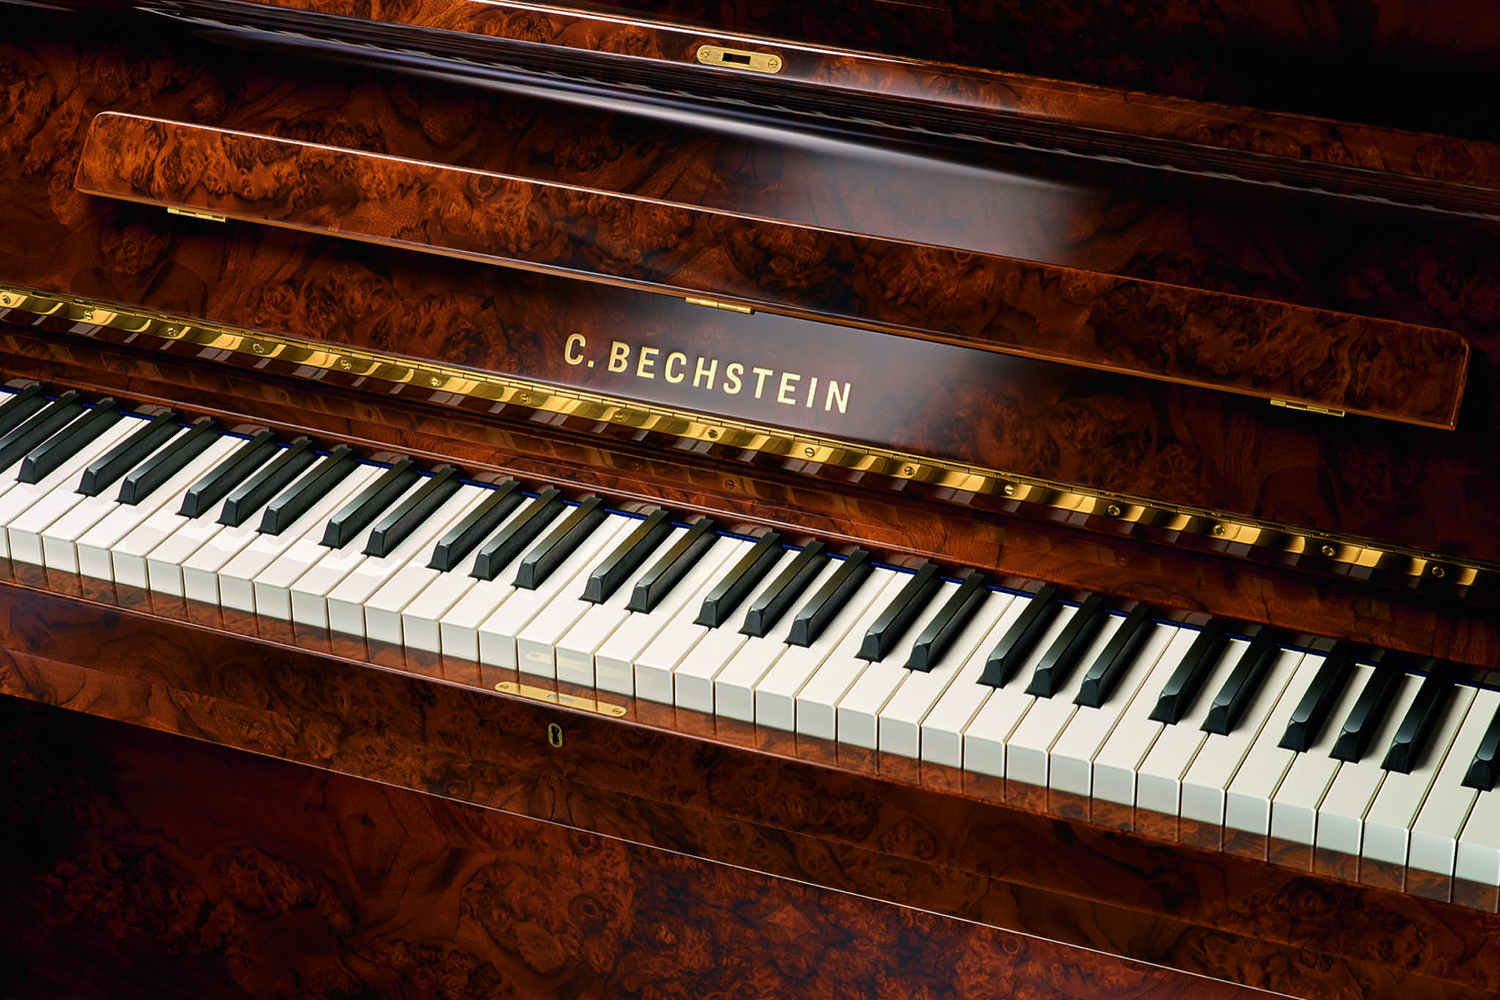 Bechstein Piano